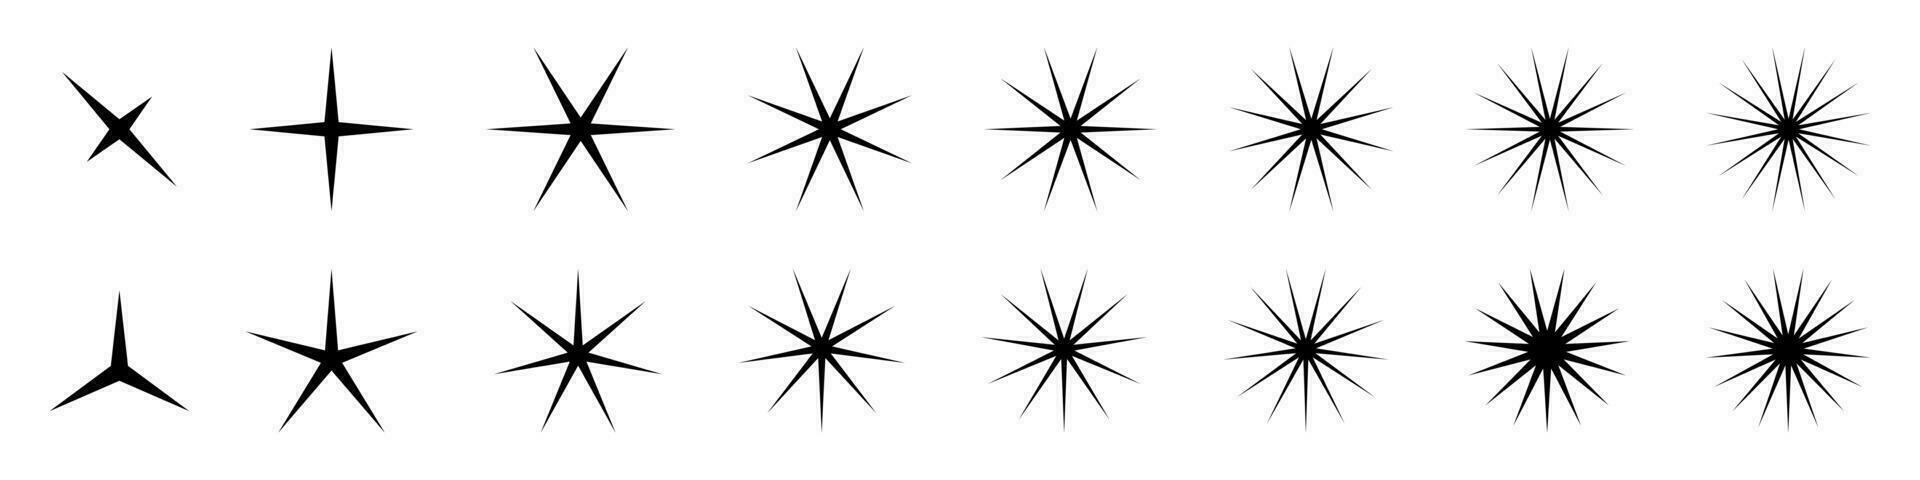 estrella iconos conjunto de estallido estelar colección de de moda estrellas formas vector íconos para aplicaciones y sitios web